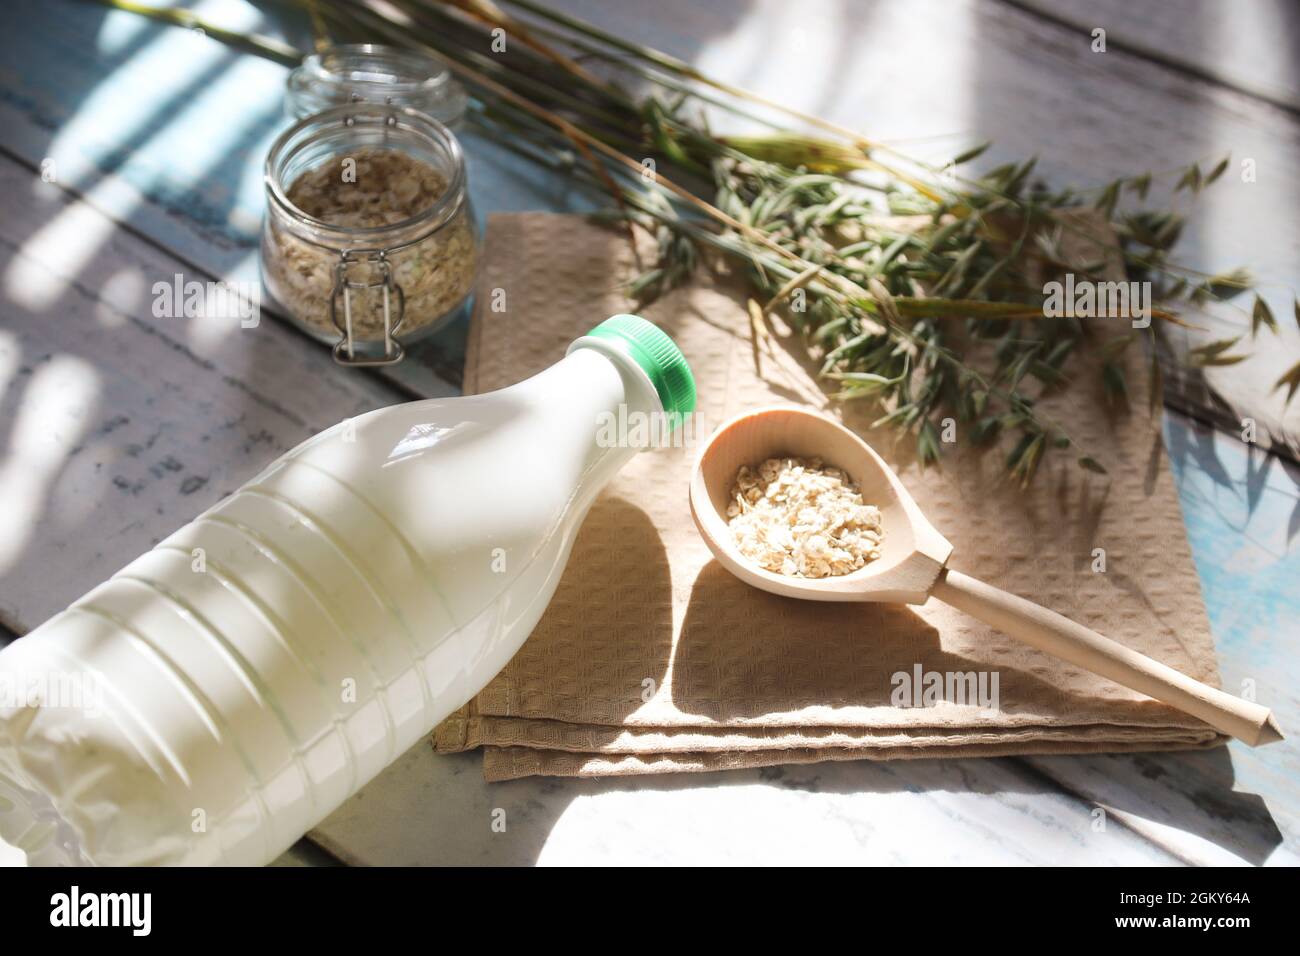 Una cuchara de madera con escamas de avena y una botella de leche de avena sobre la mesa con resplandor solar. Foto de stock